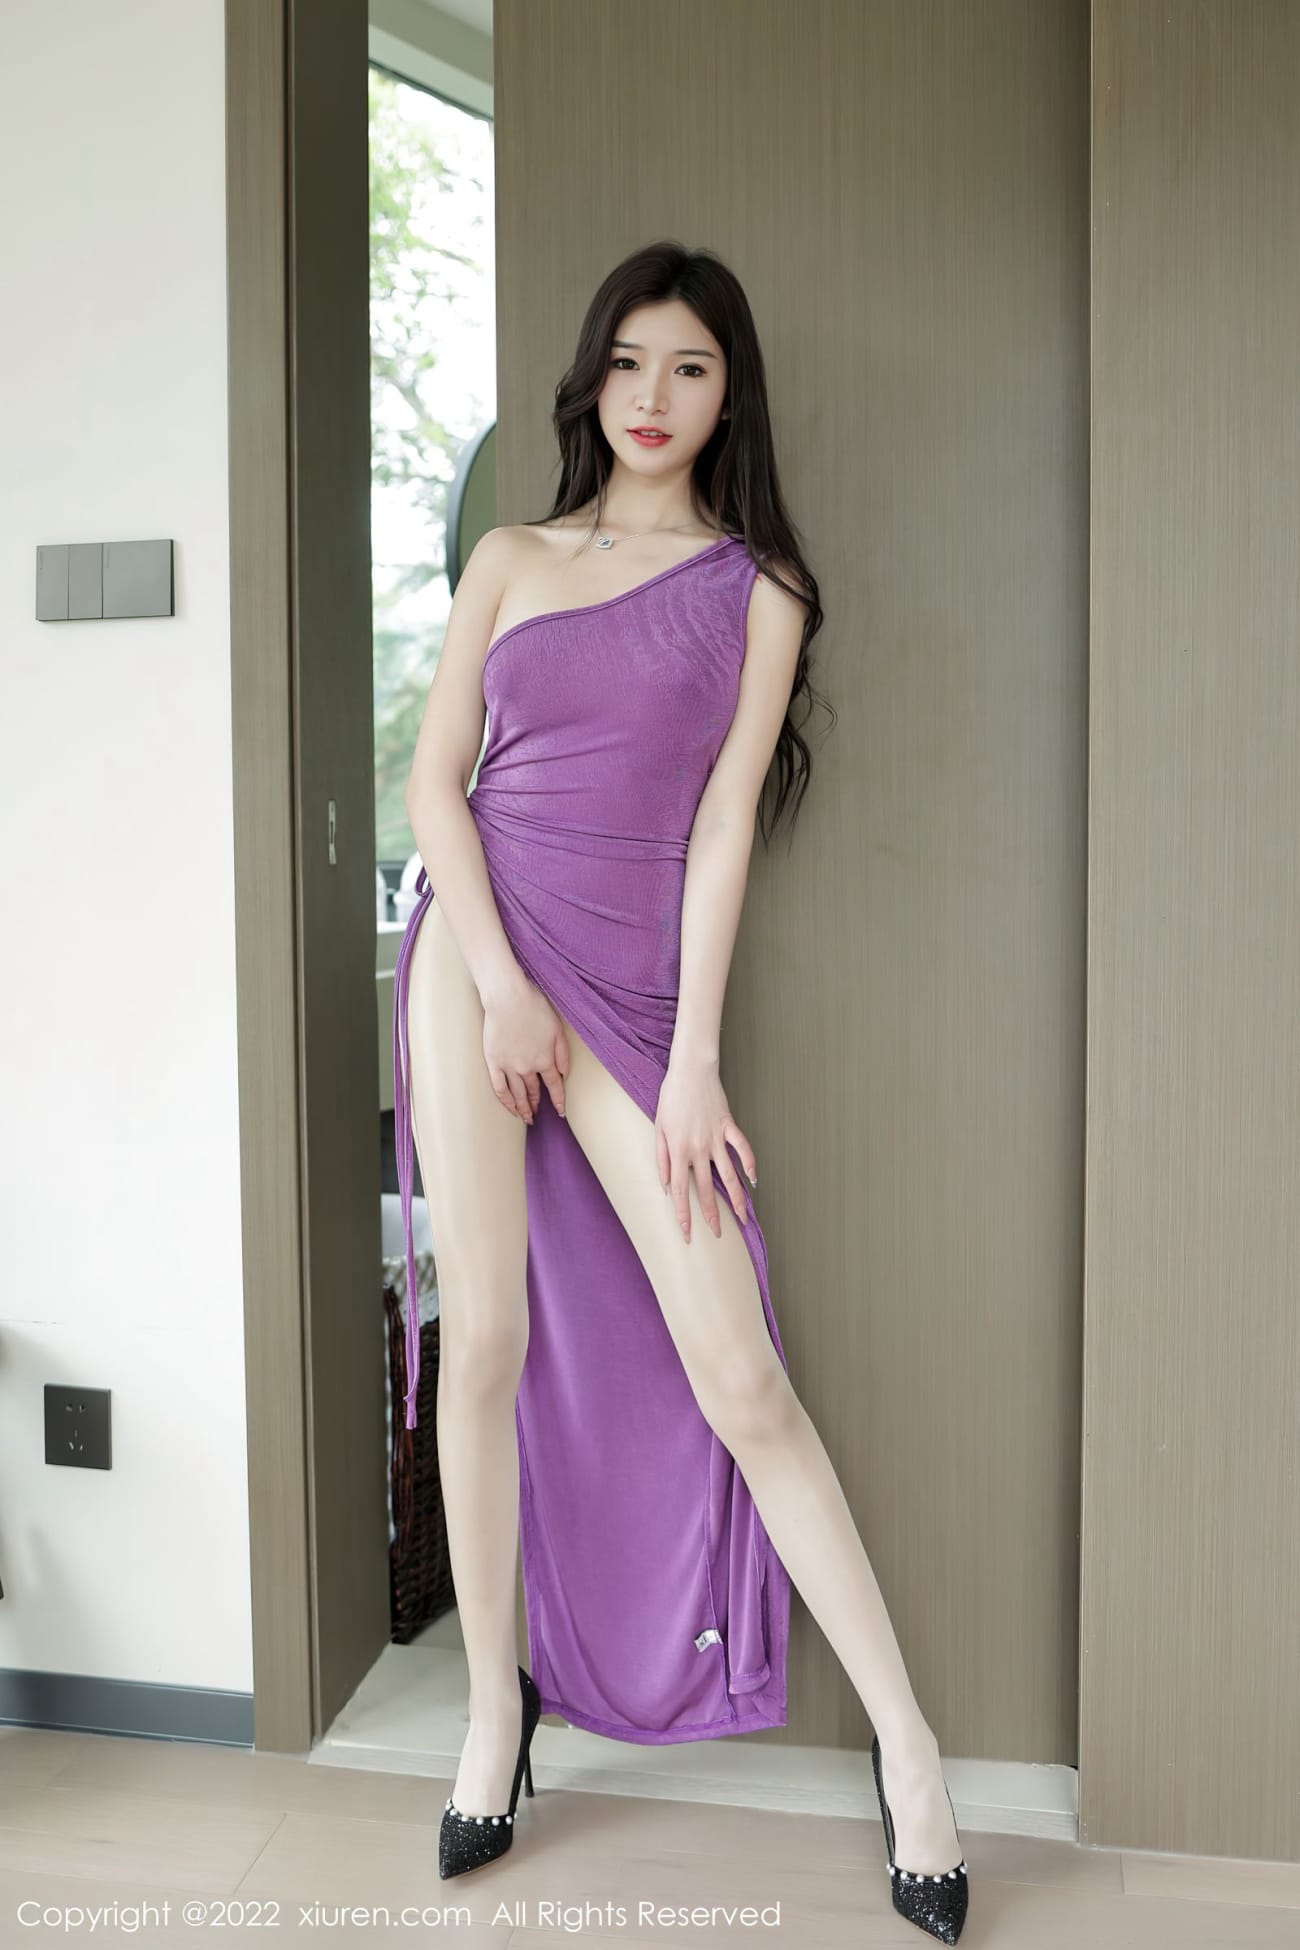 新人模特hebe韩心雨紫色长裙搭配原色丝袜诱人写真